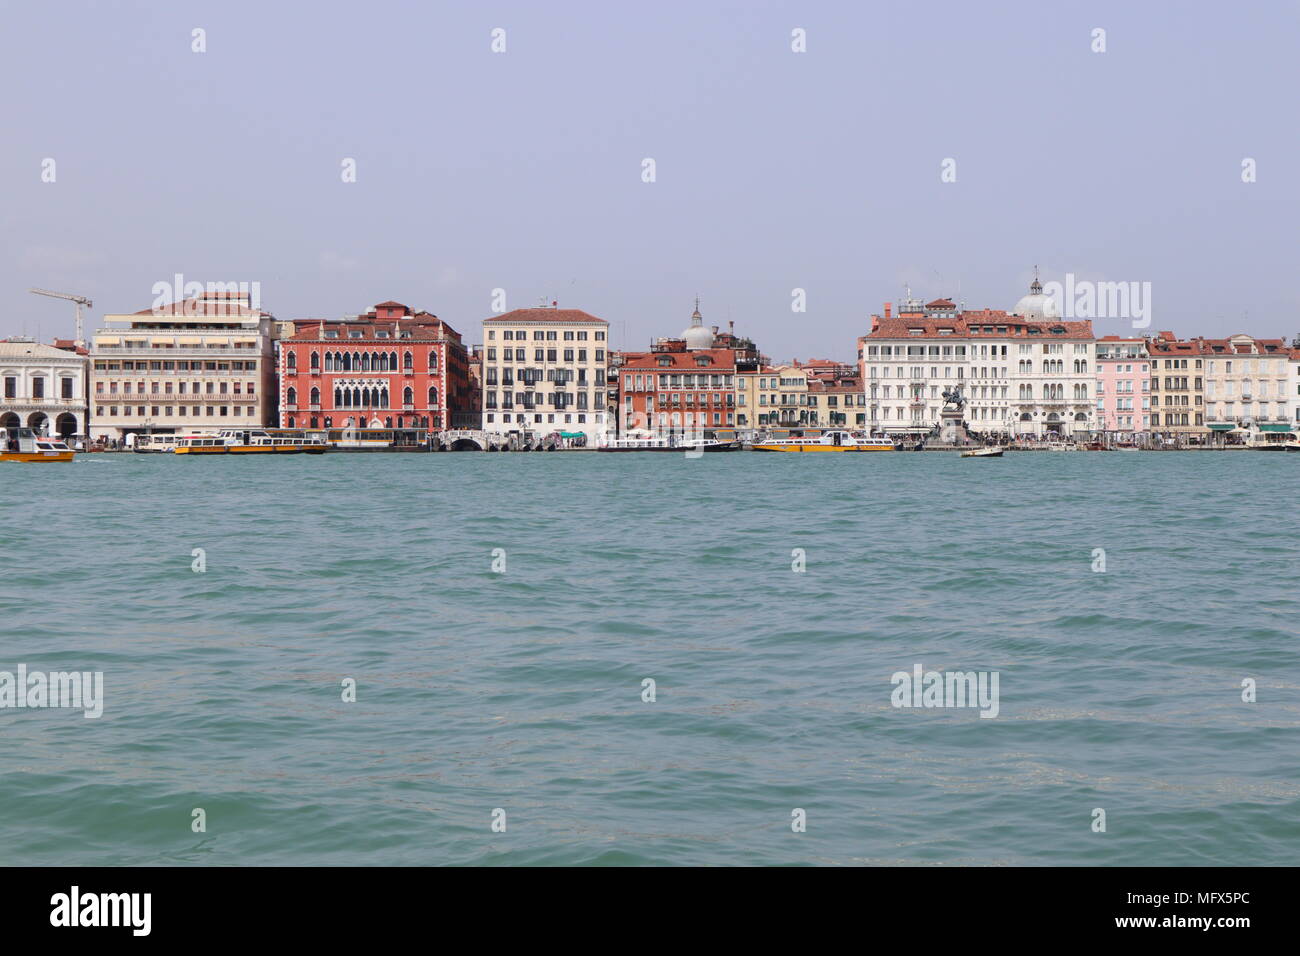 Skyline della città di Venezia con palazzi storici, giornata soleggiata, Italia, Europa Foto Stock